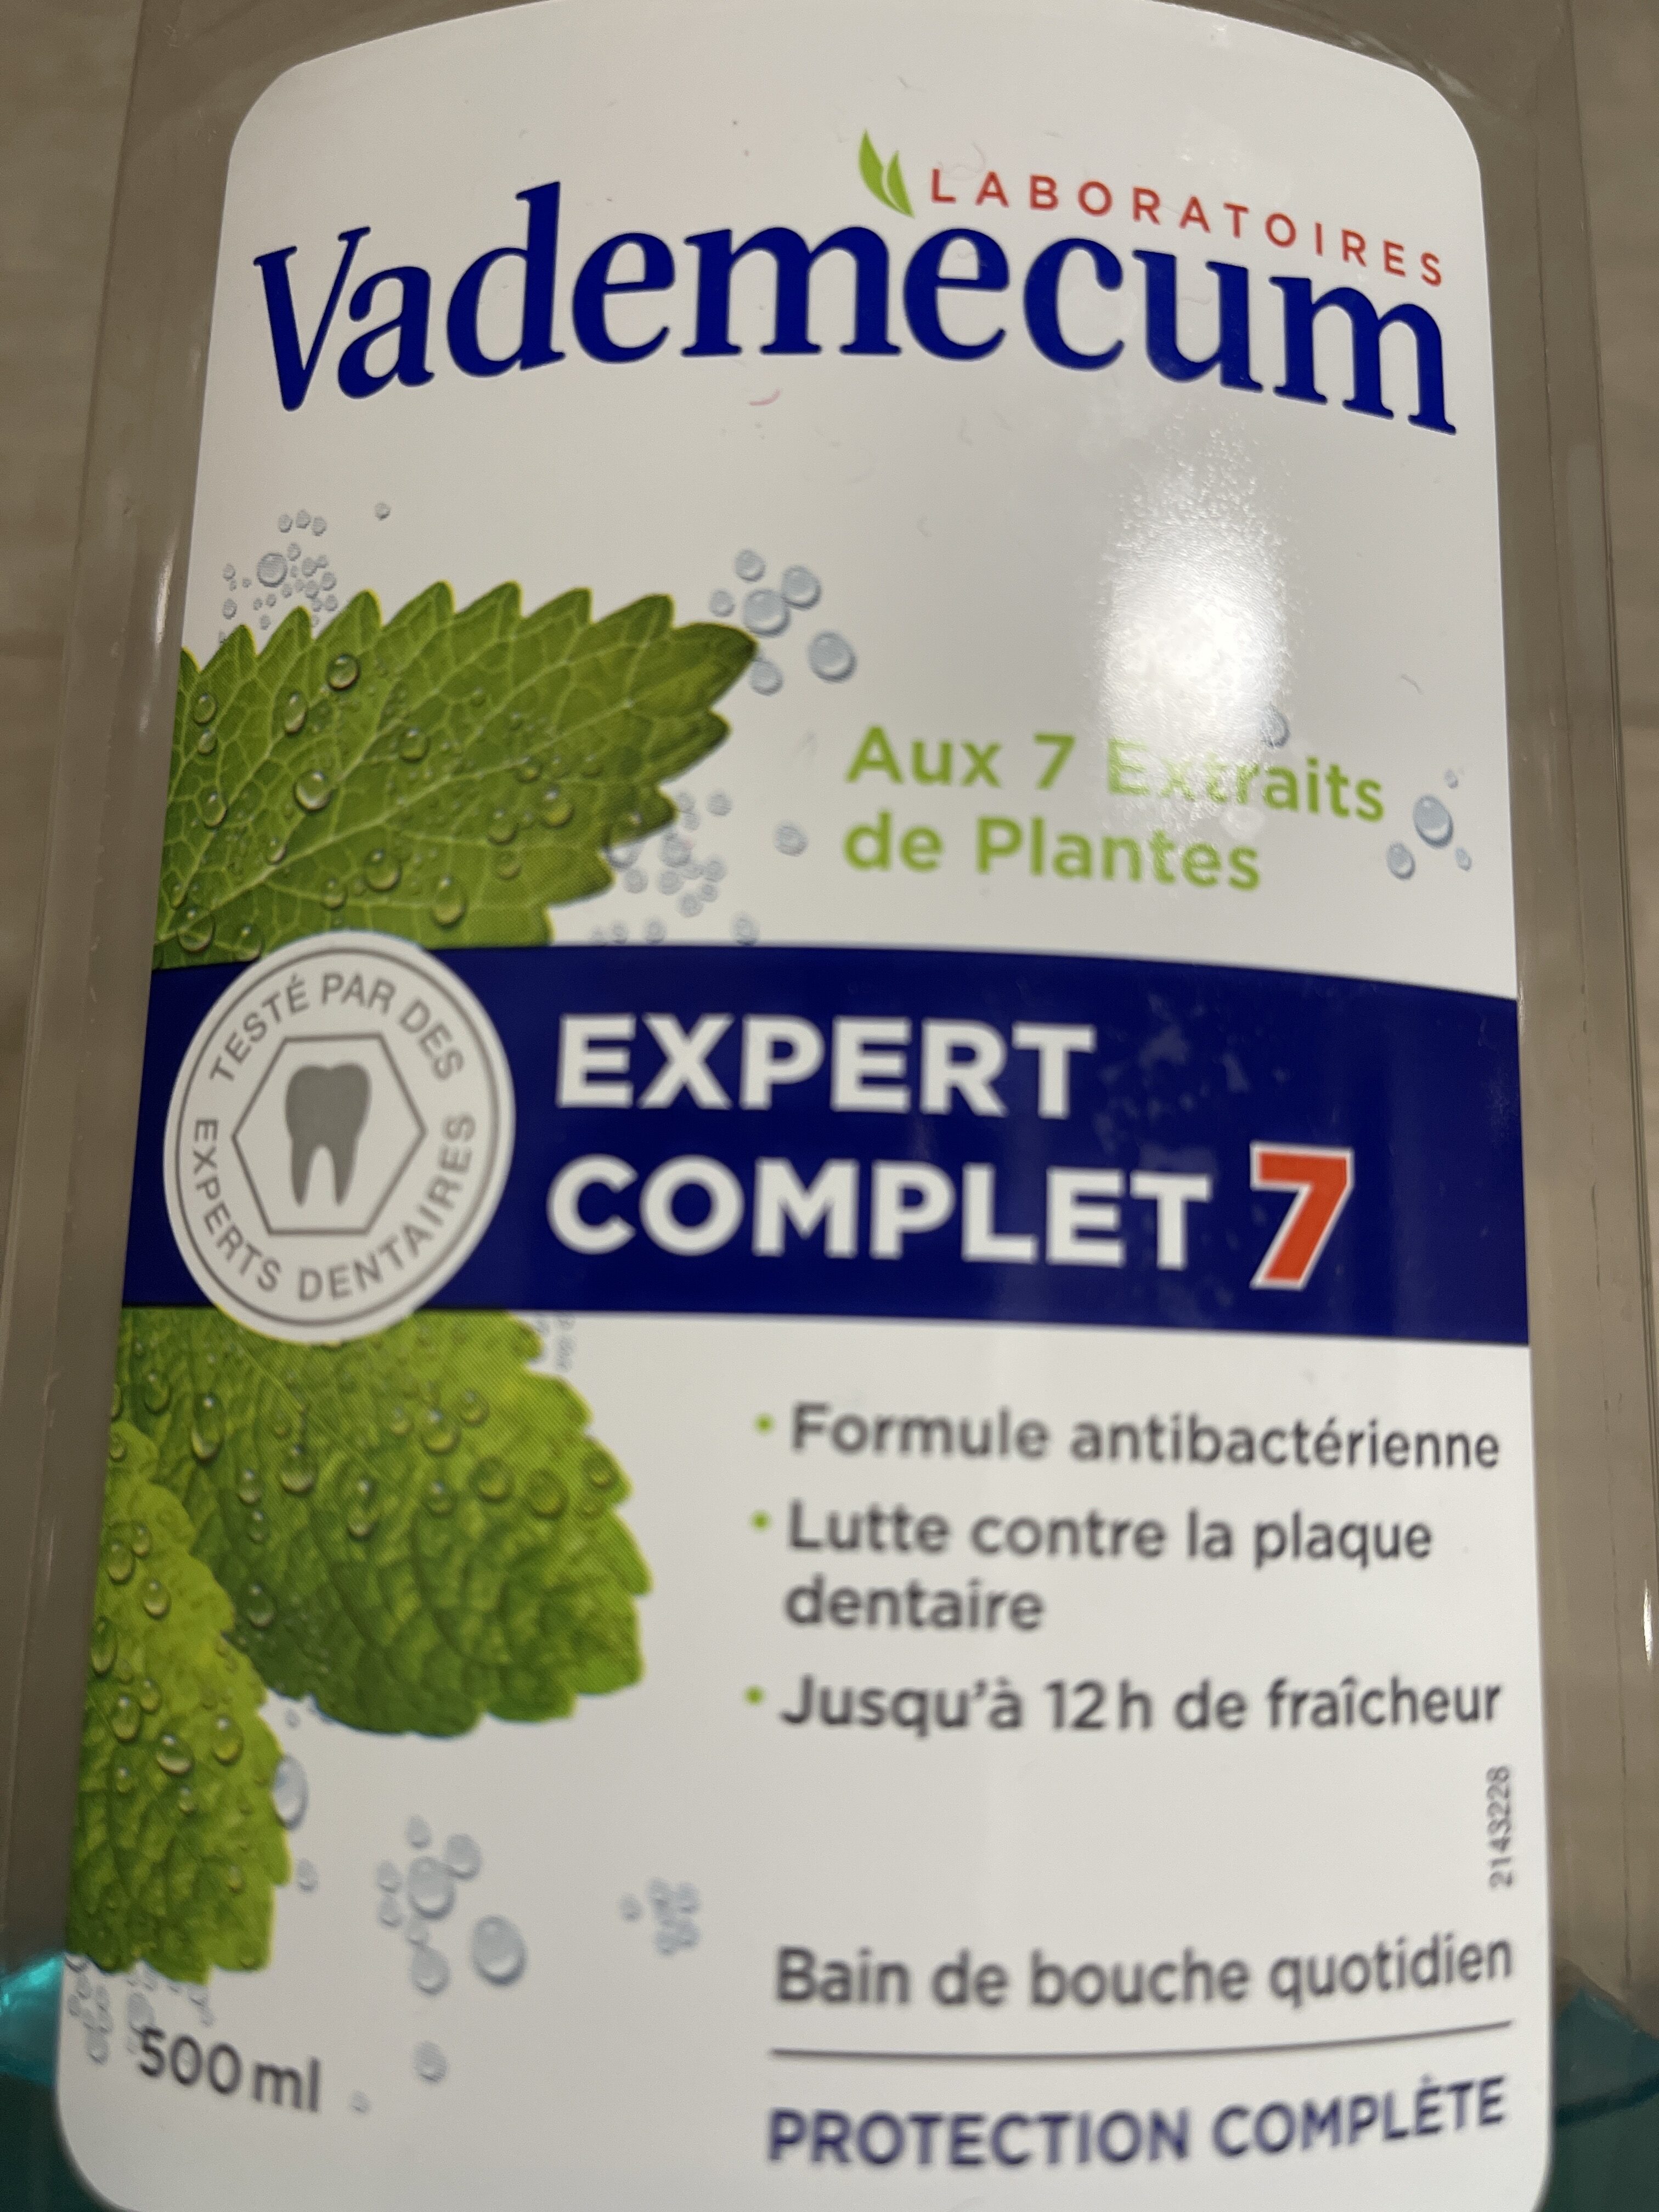 Vademecum soin expert aux 7 extraits de plantes - Product - fr